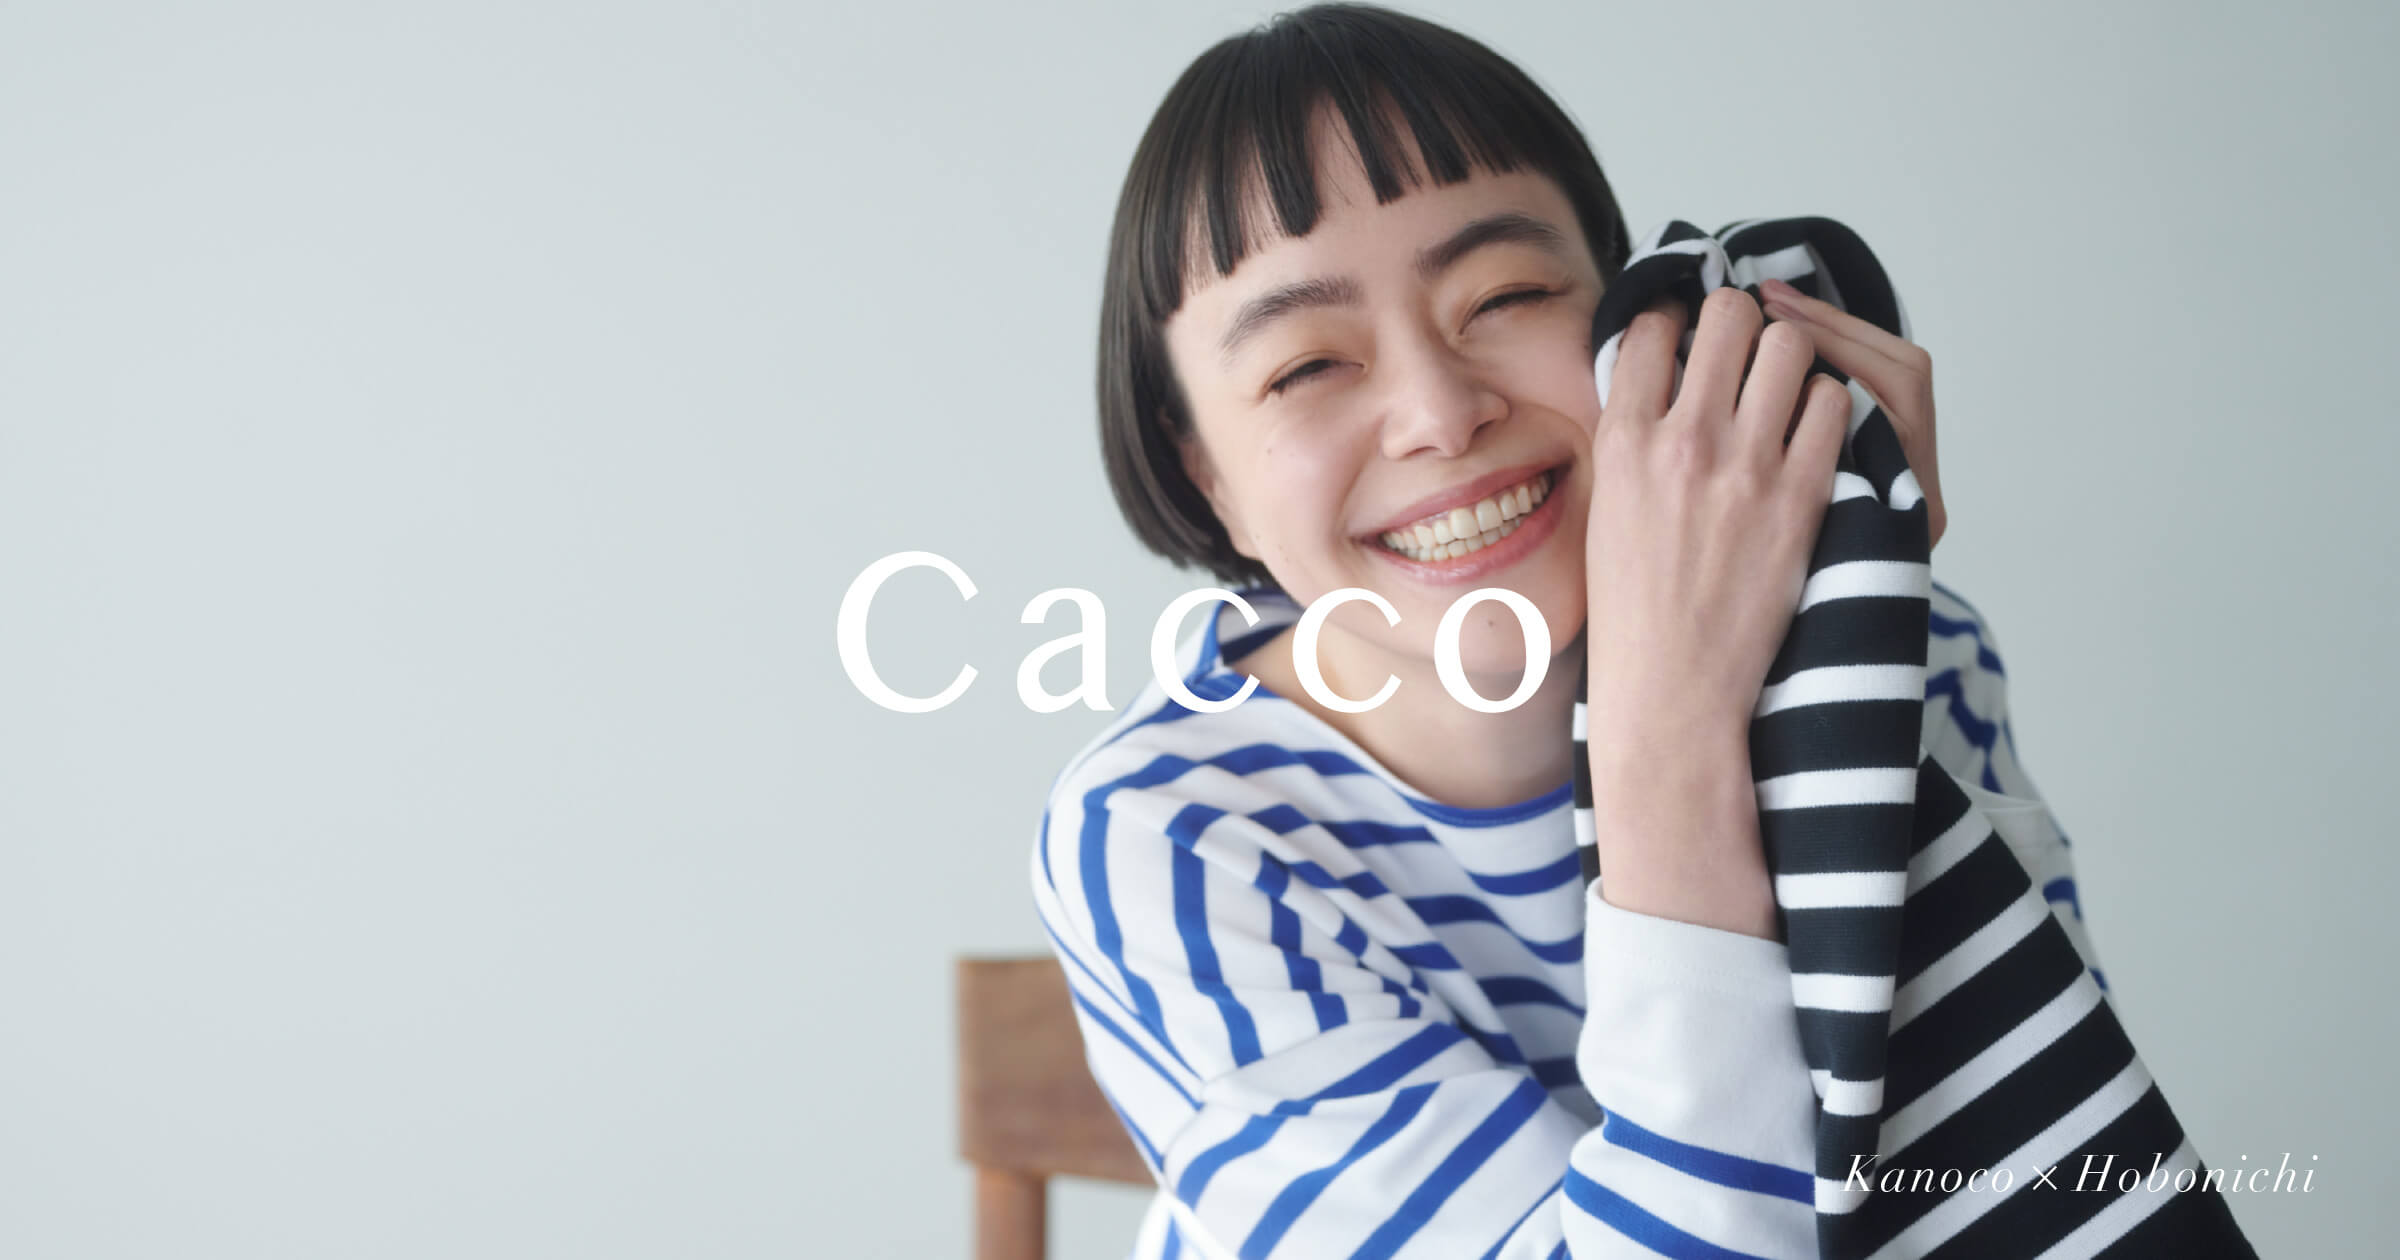 Cacco - ほぼ日刊イトイ新聞